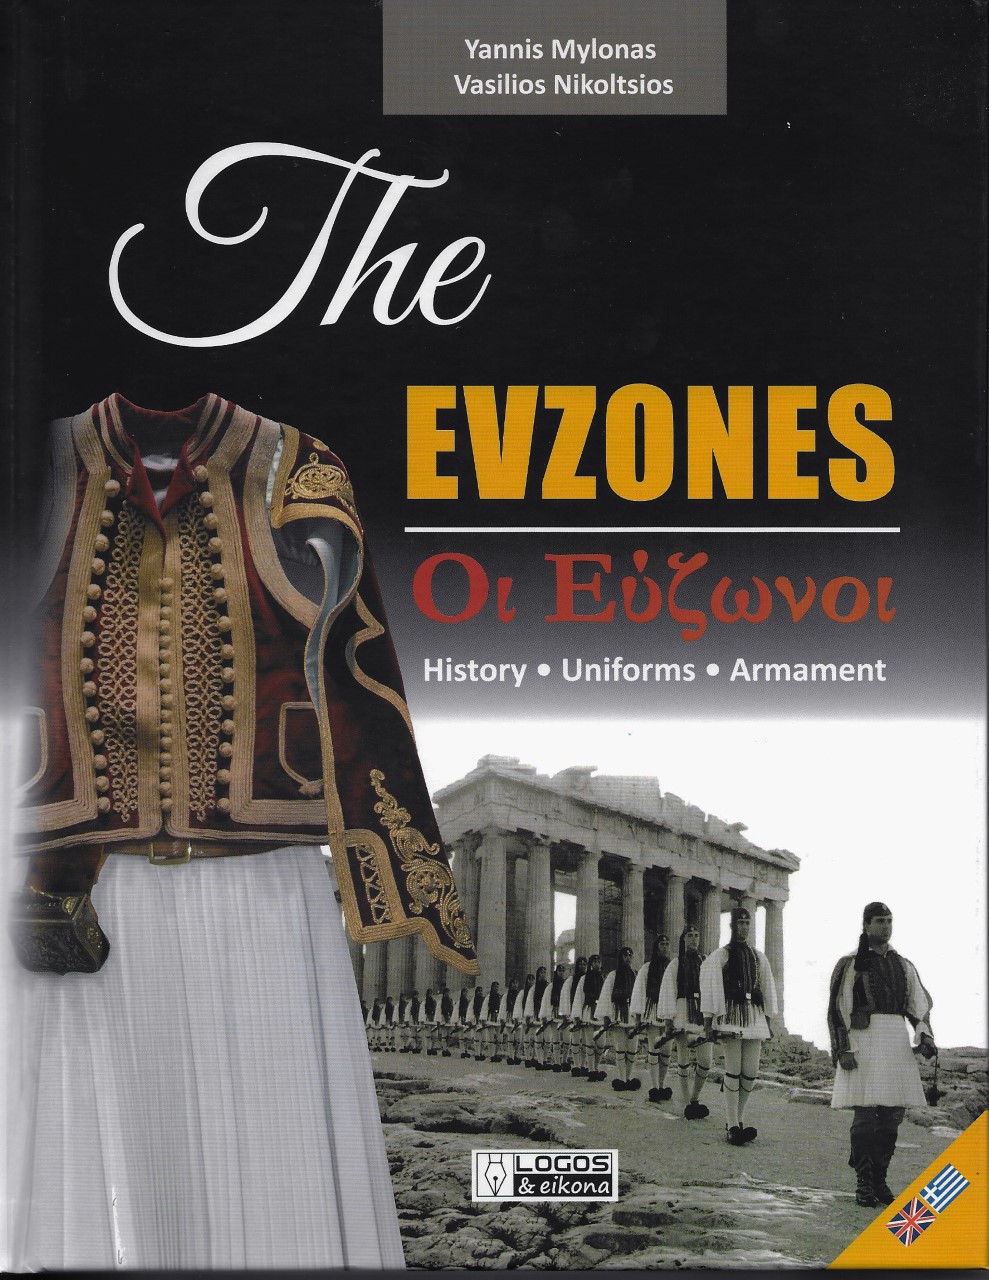 The Evzones.  